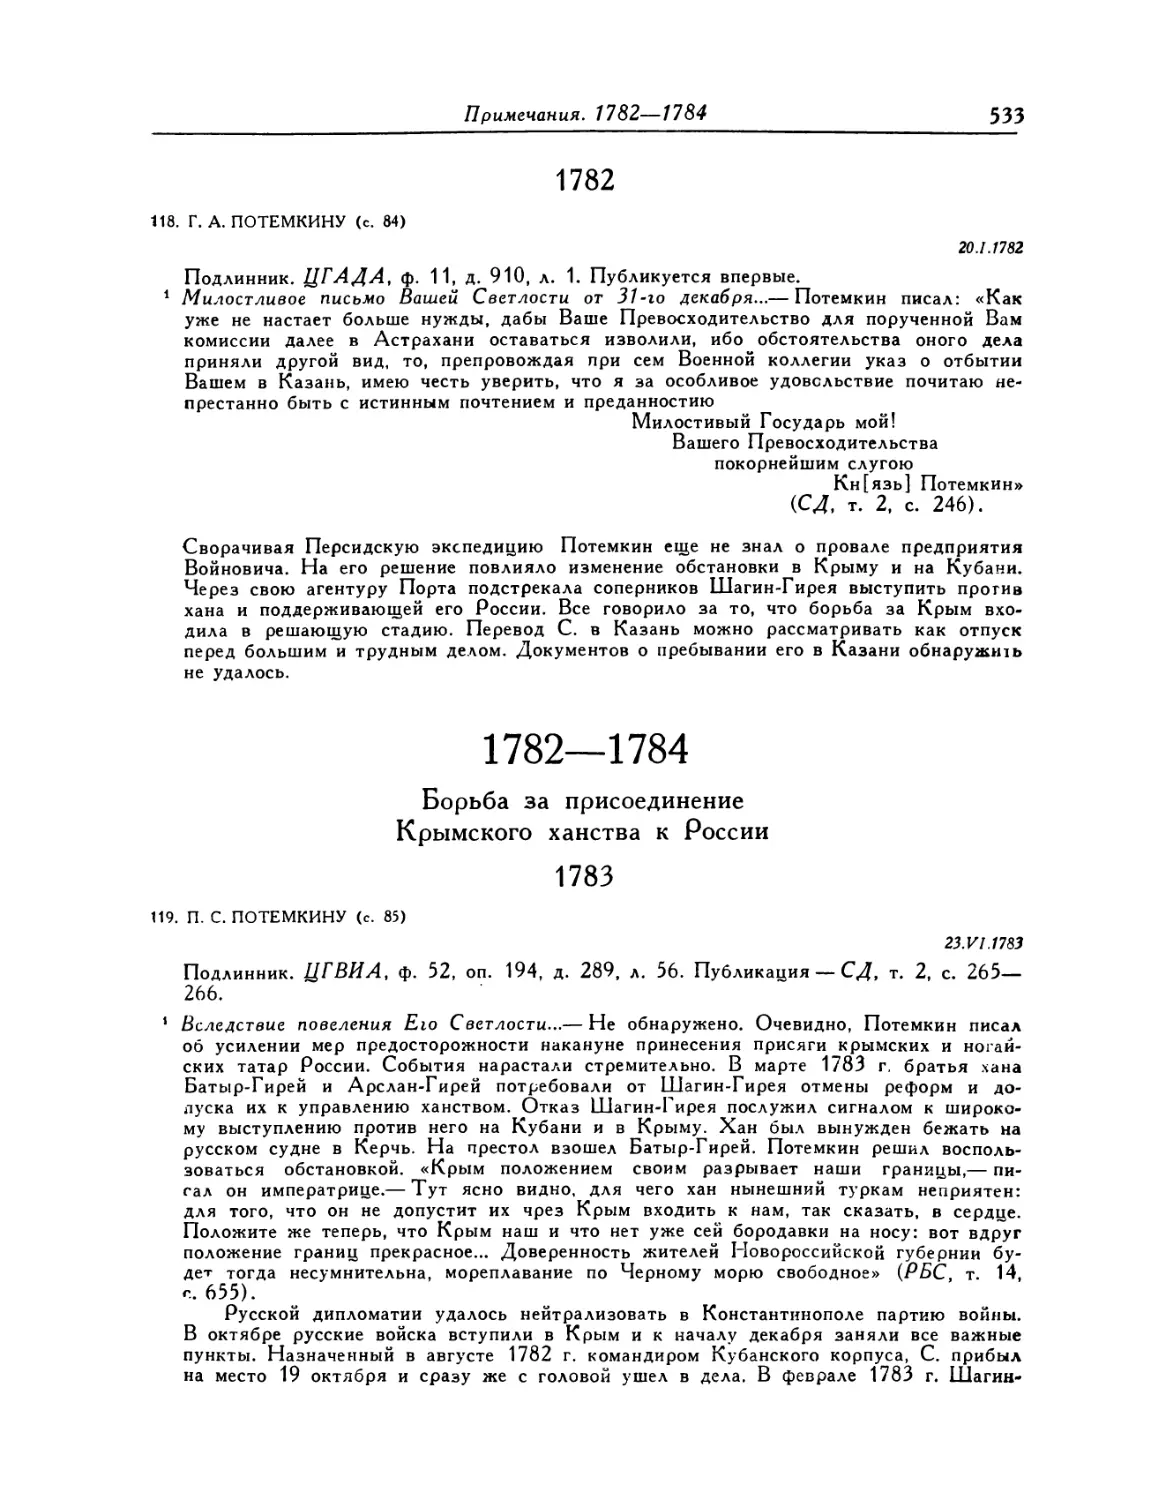 1782—1784. Борьба за присоединение Крымского ханства к России